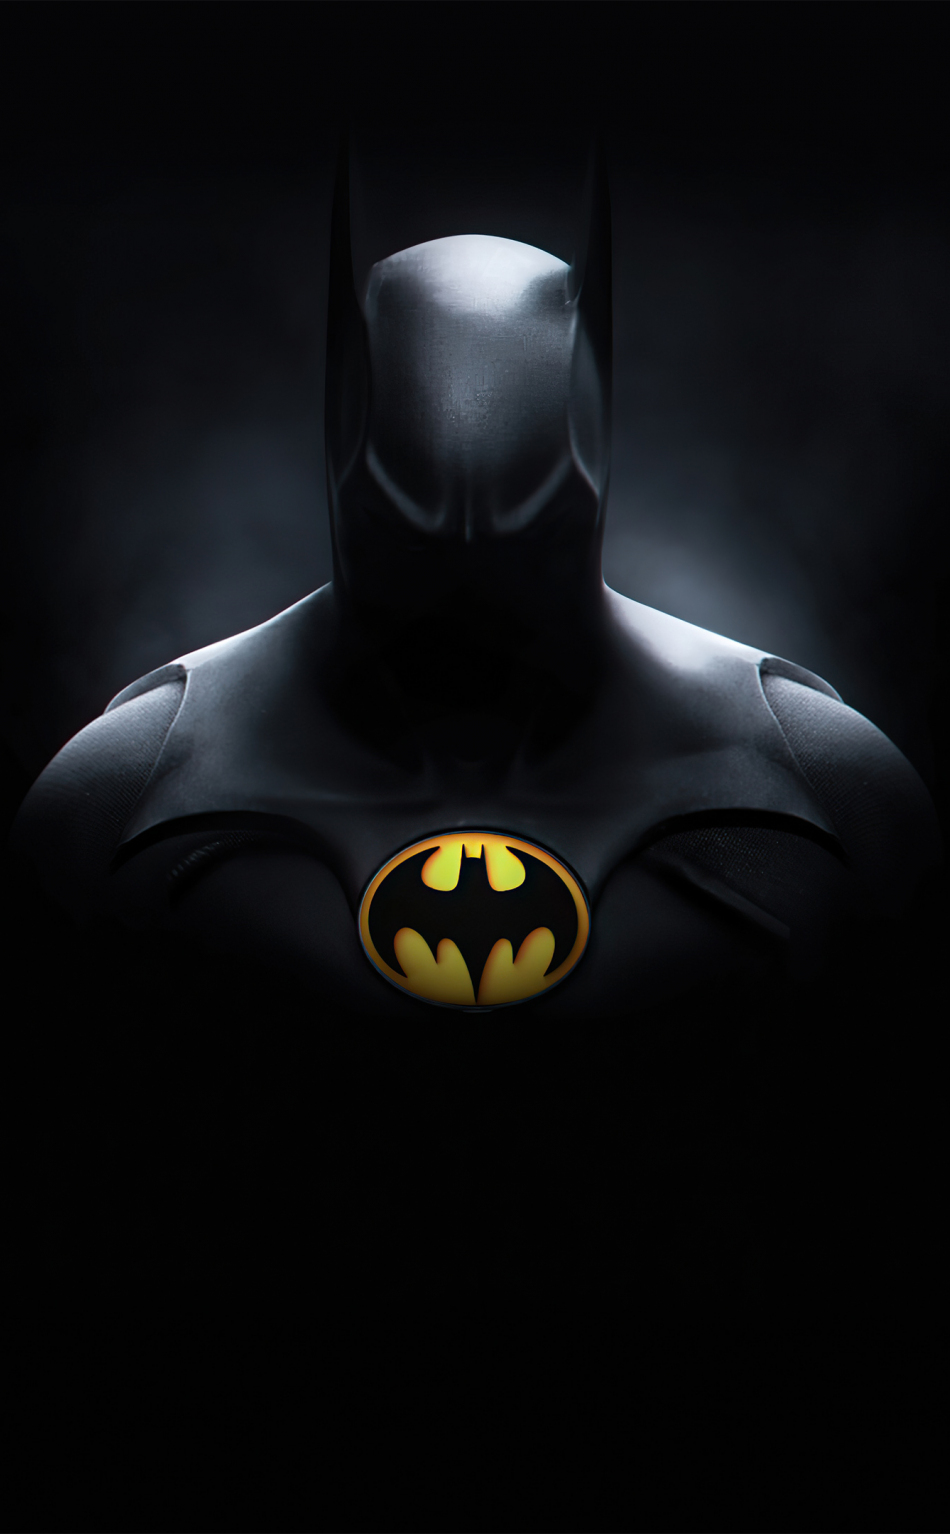 Batman, dark knight, DC Hero, 950x1534 wallpaper